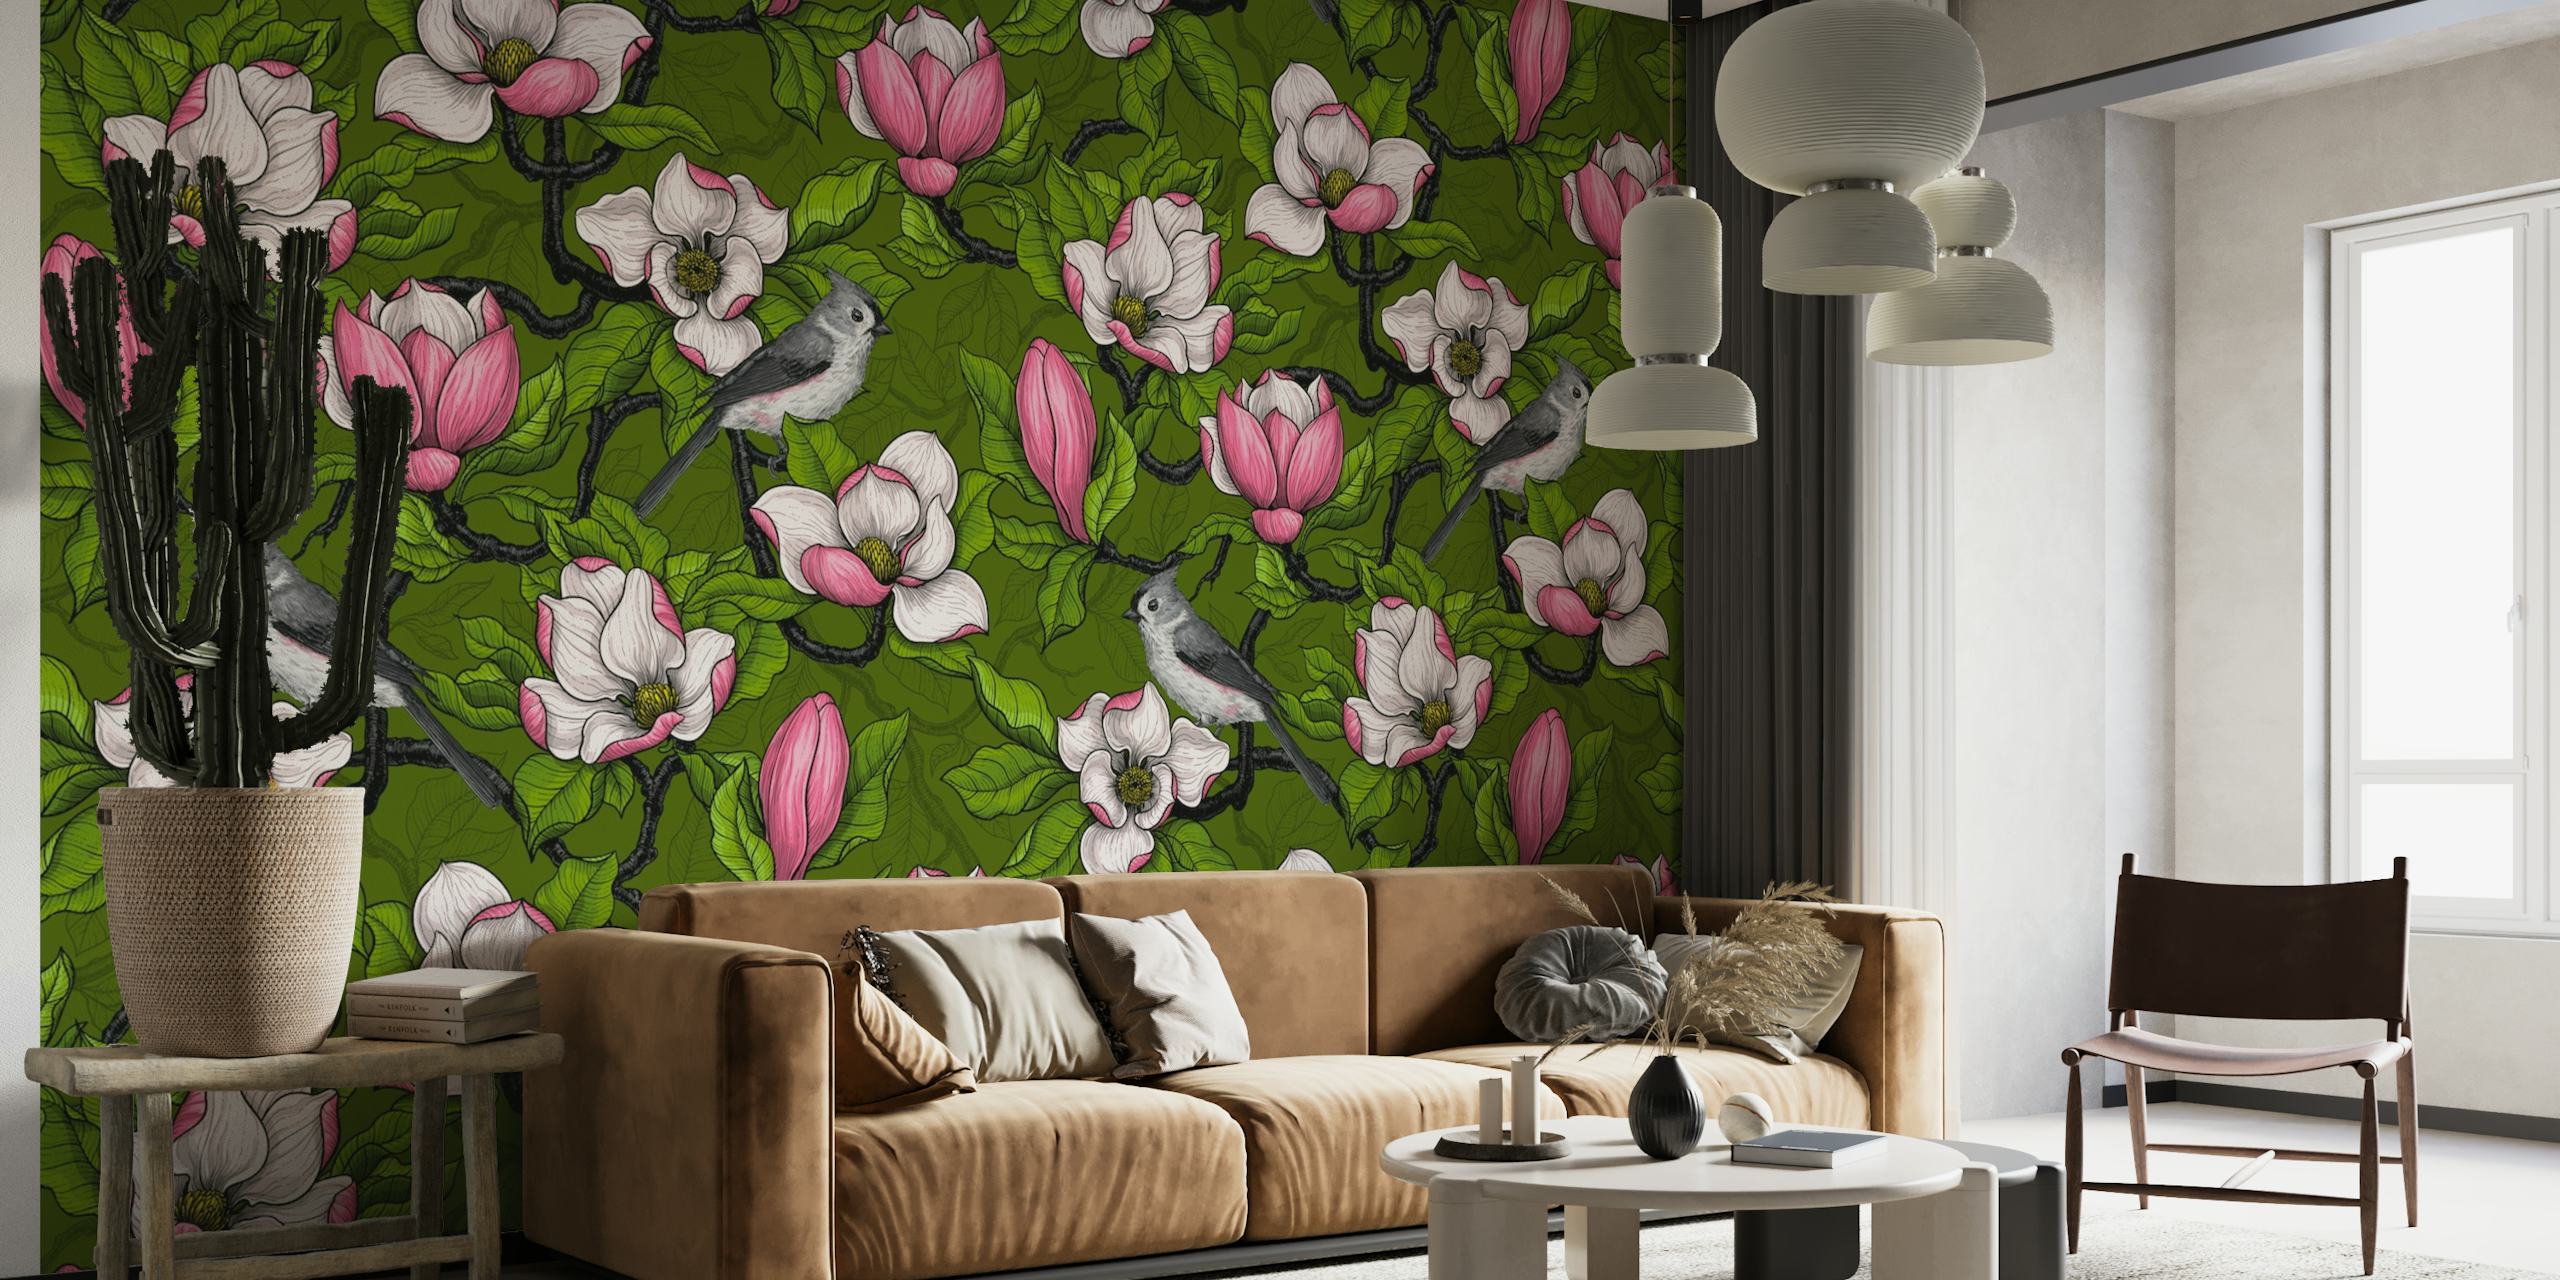 Decorazione murale con fiori di magnolia in fiore e uccelli in volo